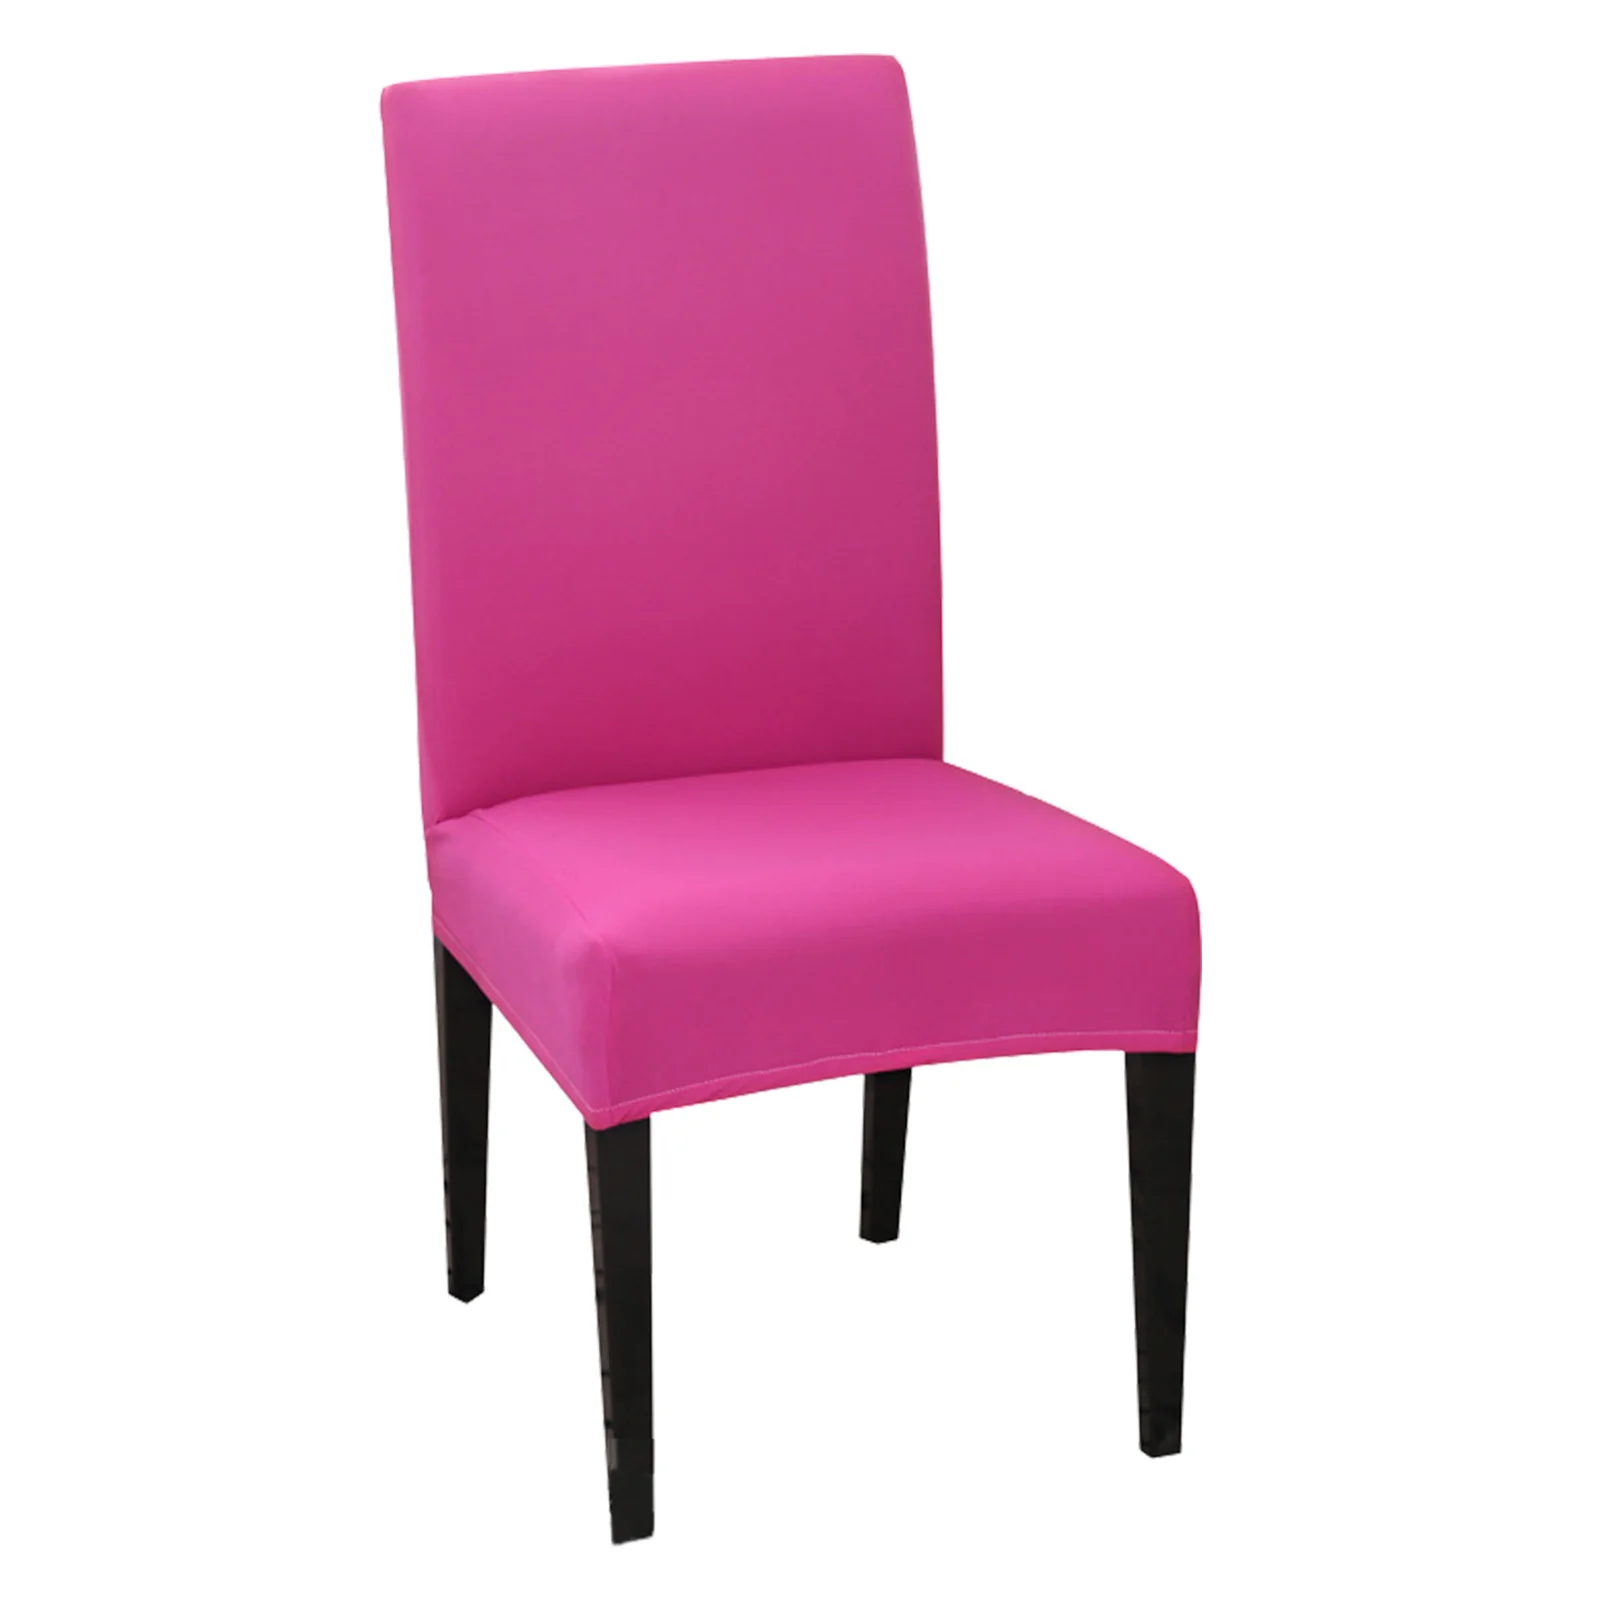 

Цельный чехол на стул, моющийся съемный защитный декоративный Чехол для мебели, чехлы на стулья с высокой спинкой, эластичное кресло